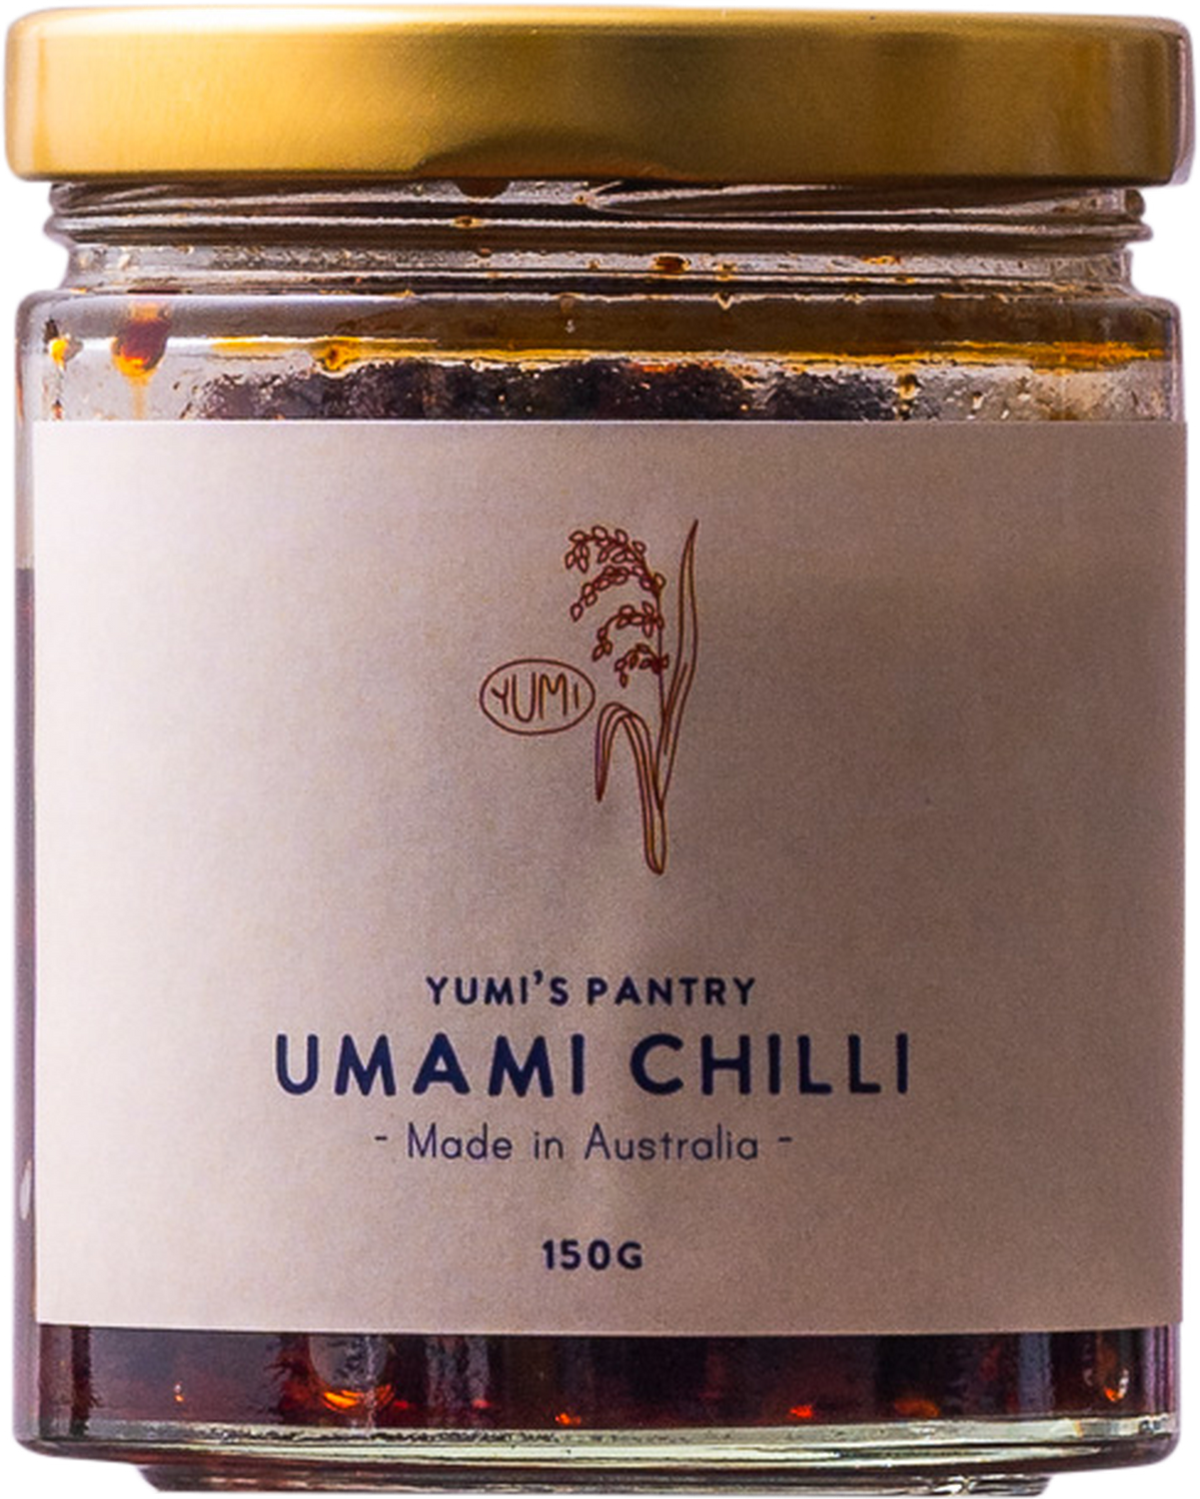 Yumi's Pantry - Umami Chilli